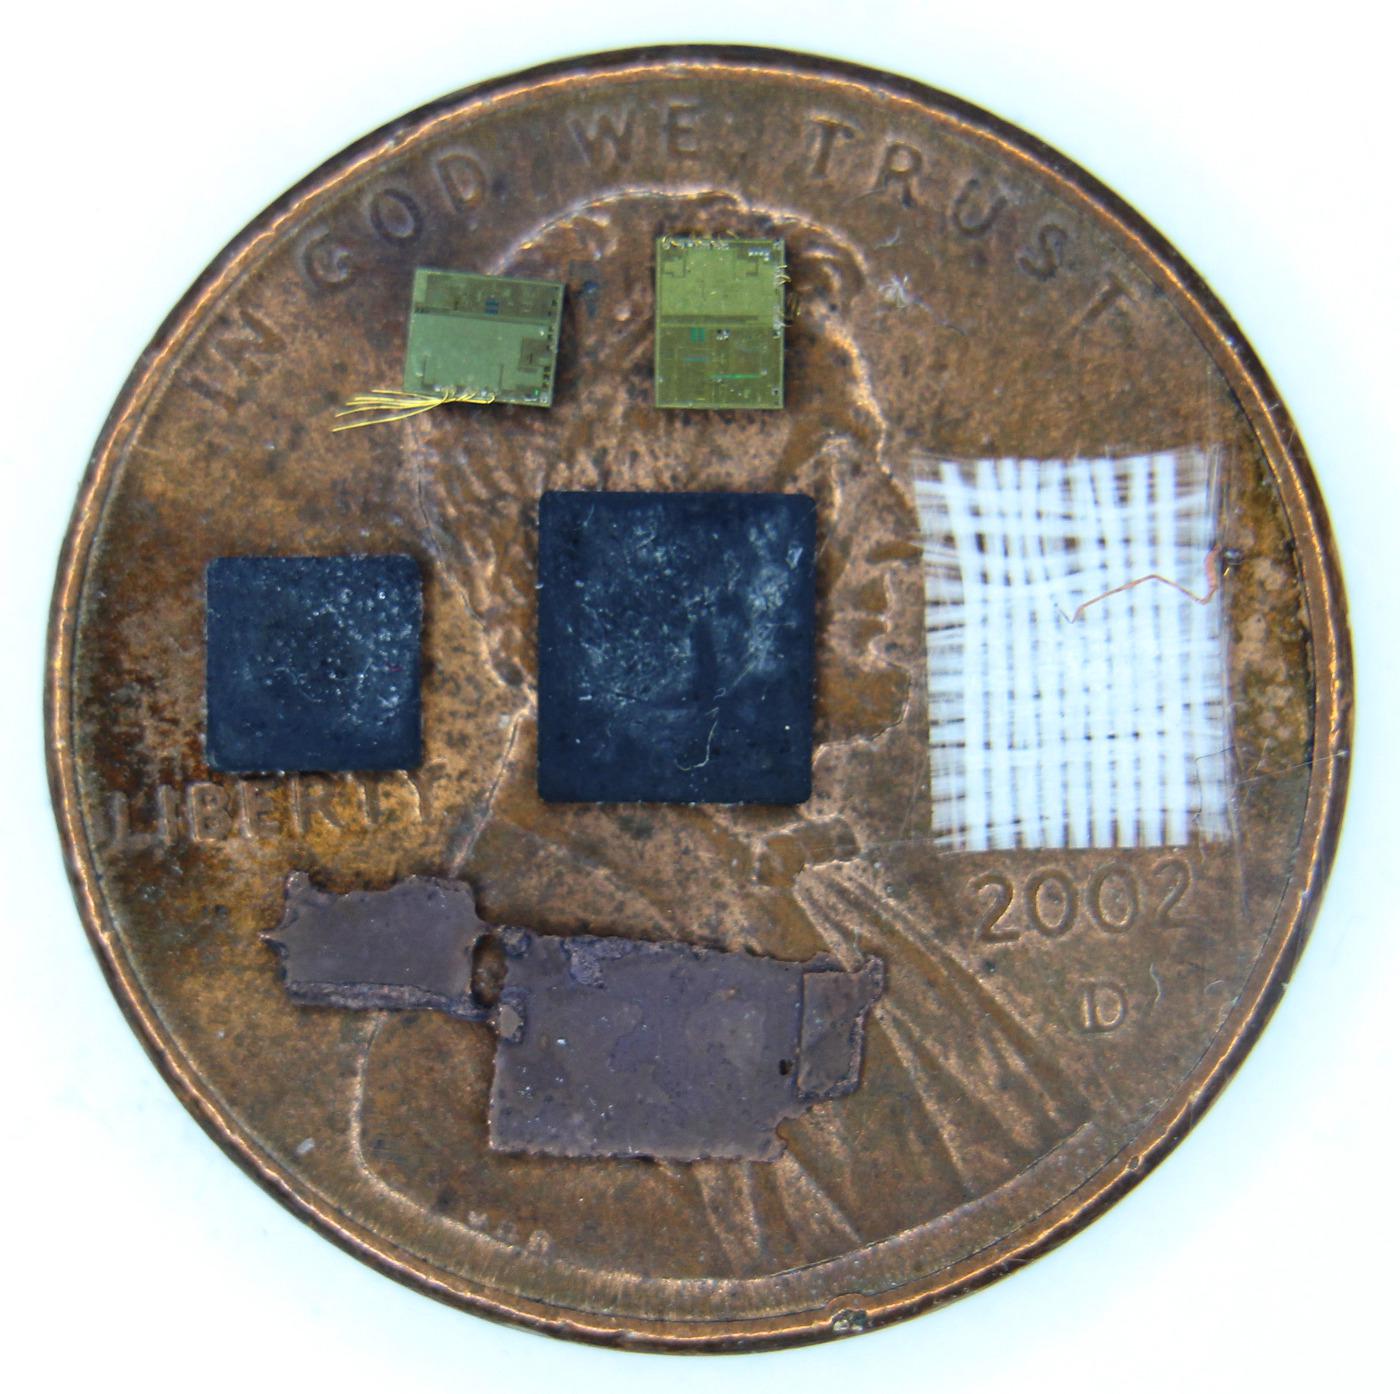 Вскрываем чип гальванической развязки с крохотным трансформатором внутри - 2